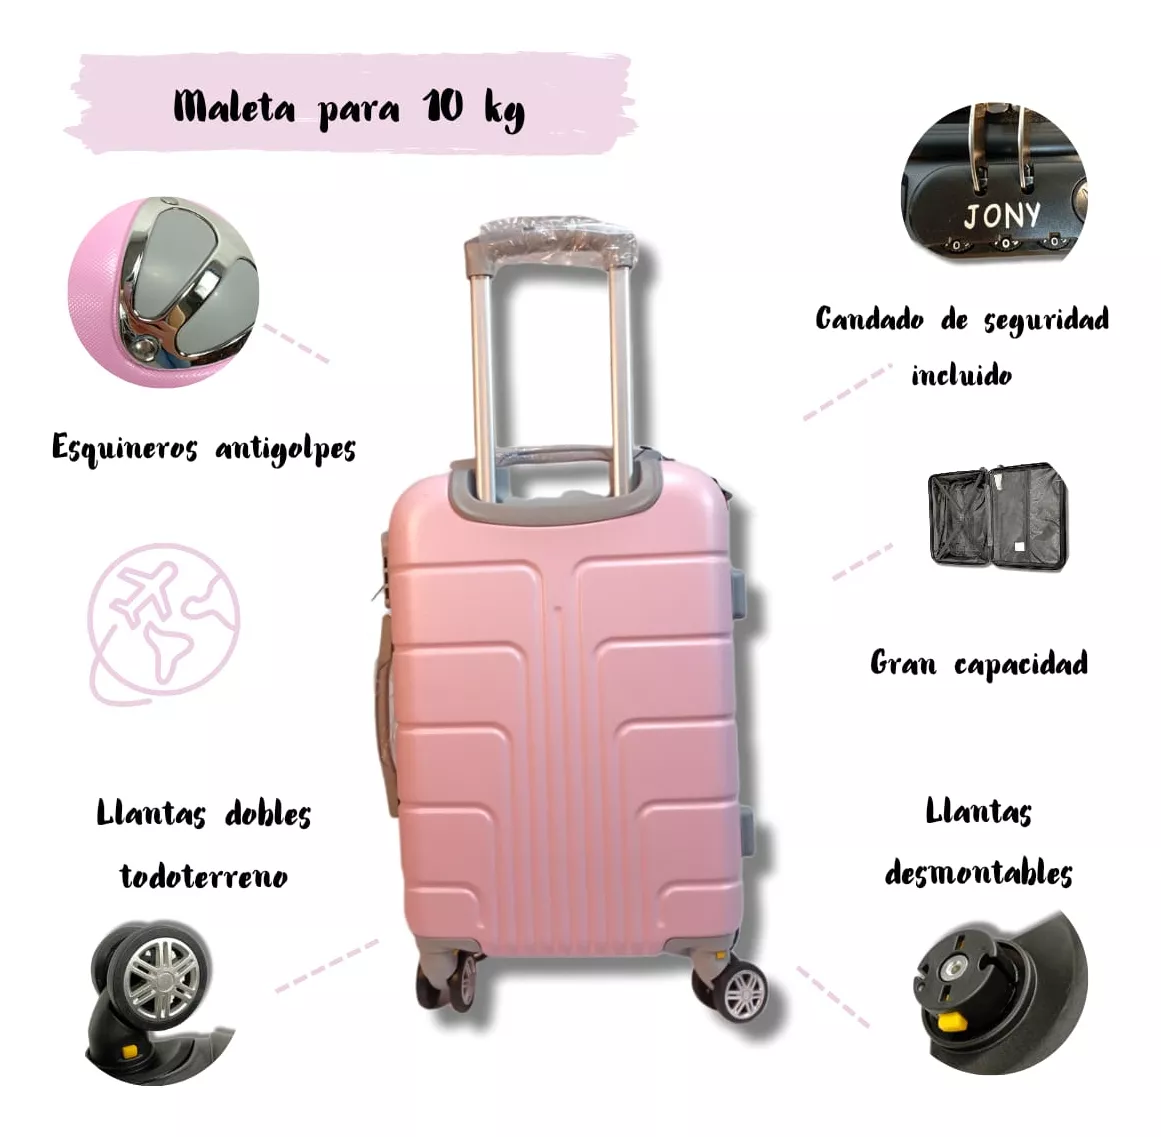 Tercera imagen para búsqueda de maletas de viaje